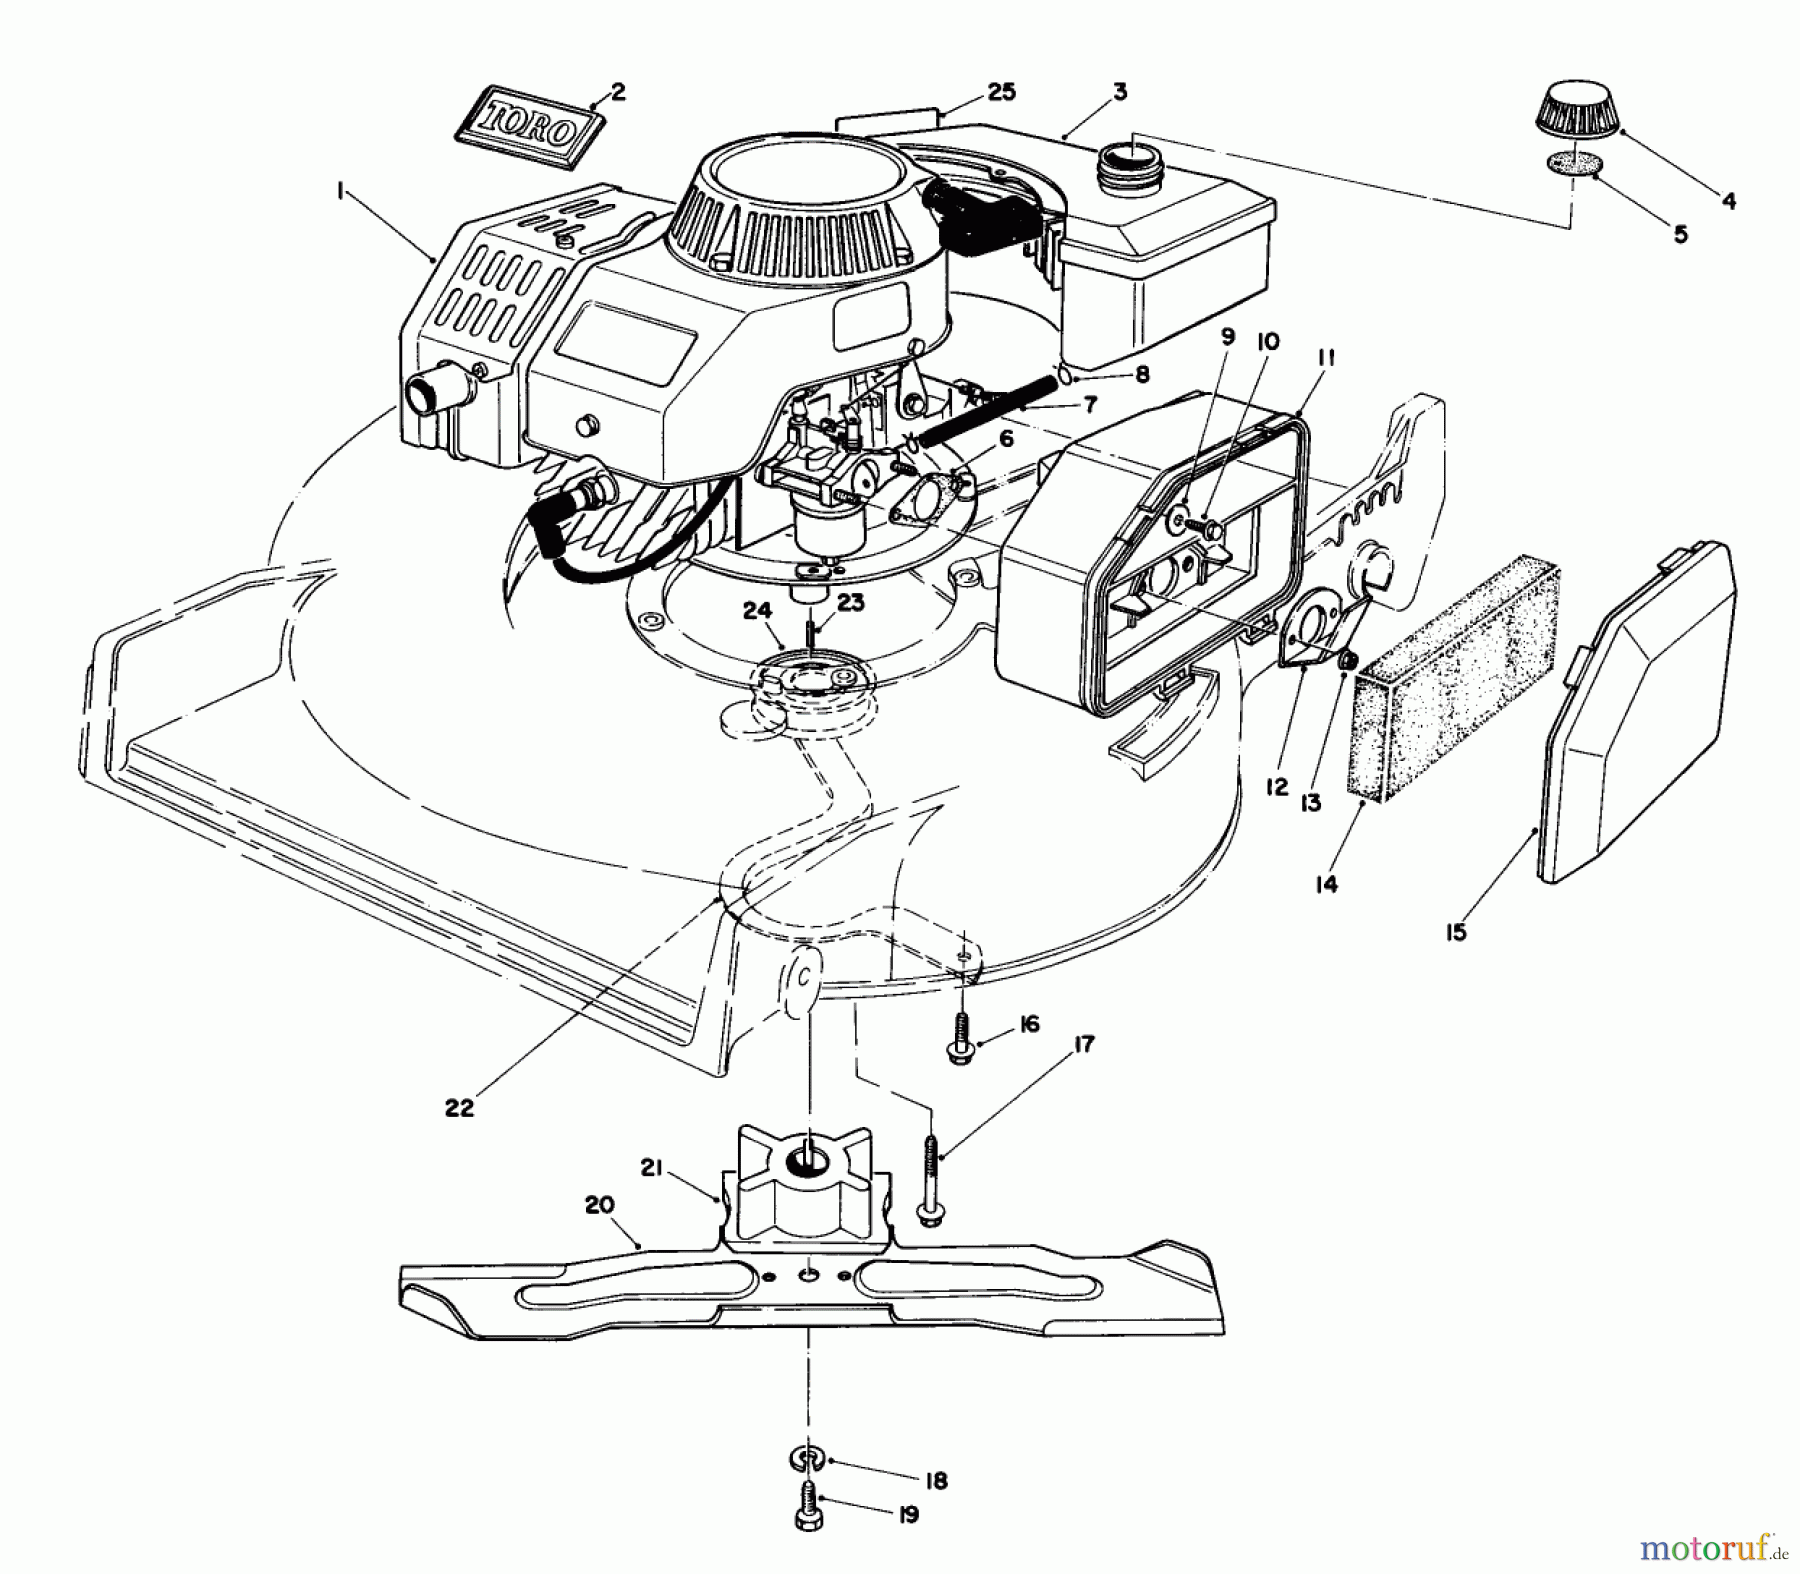  Toro Neu Mowers, Walk-Behind Seite 1 20747 - Toro Lawnmower, 1985 (5000001-5999999) ENGINE ASSEMBLY